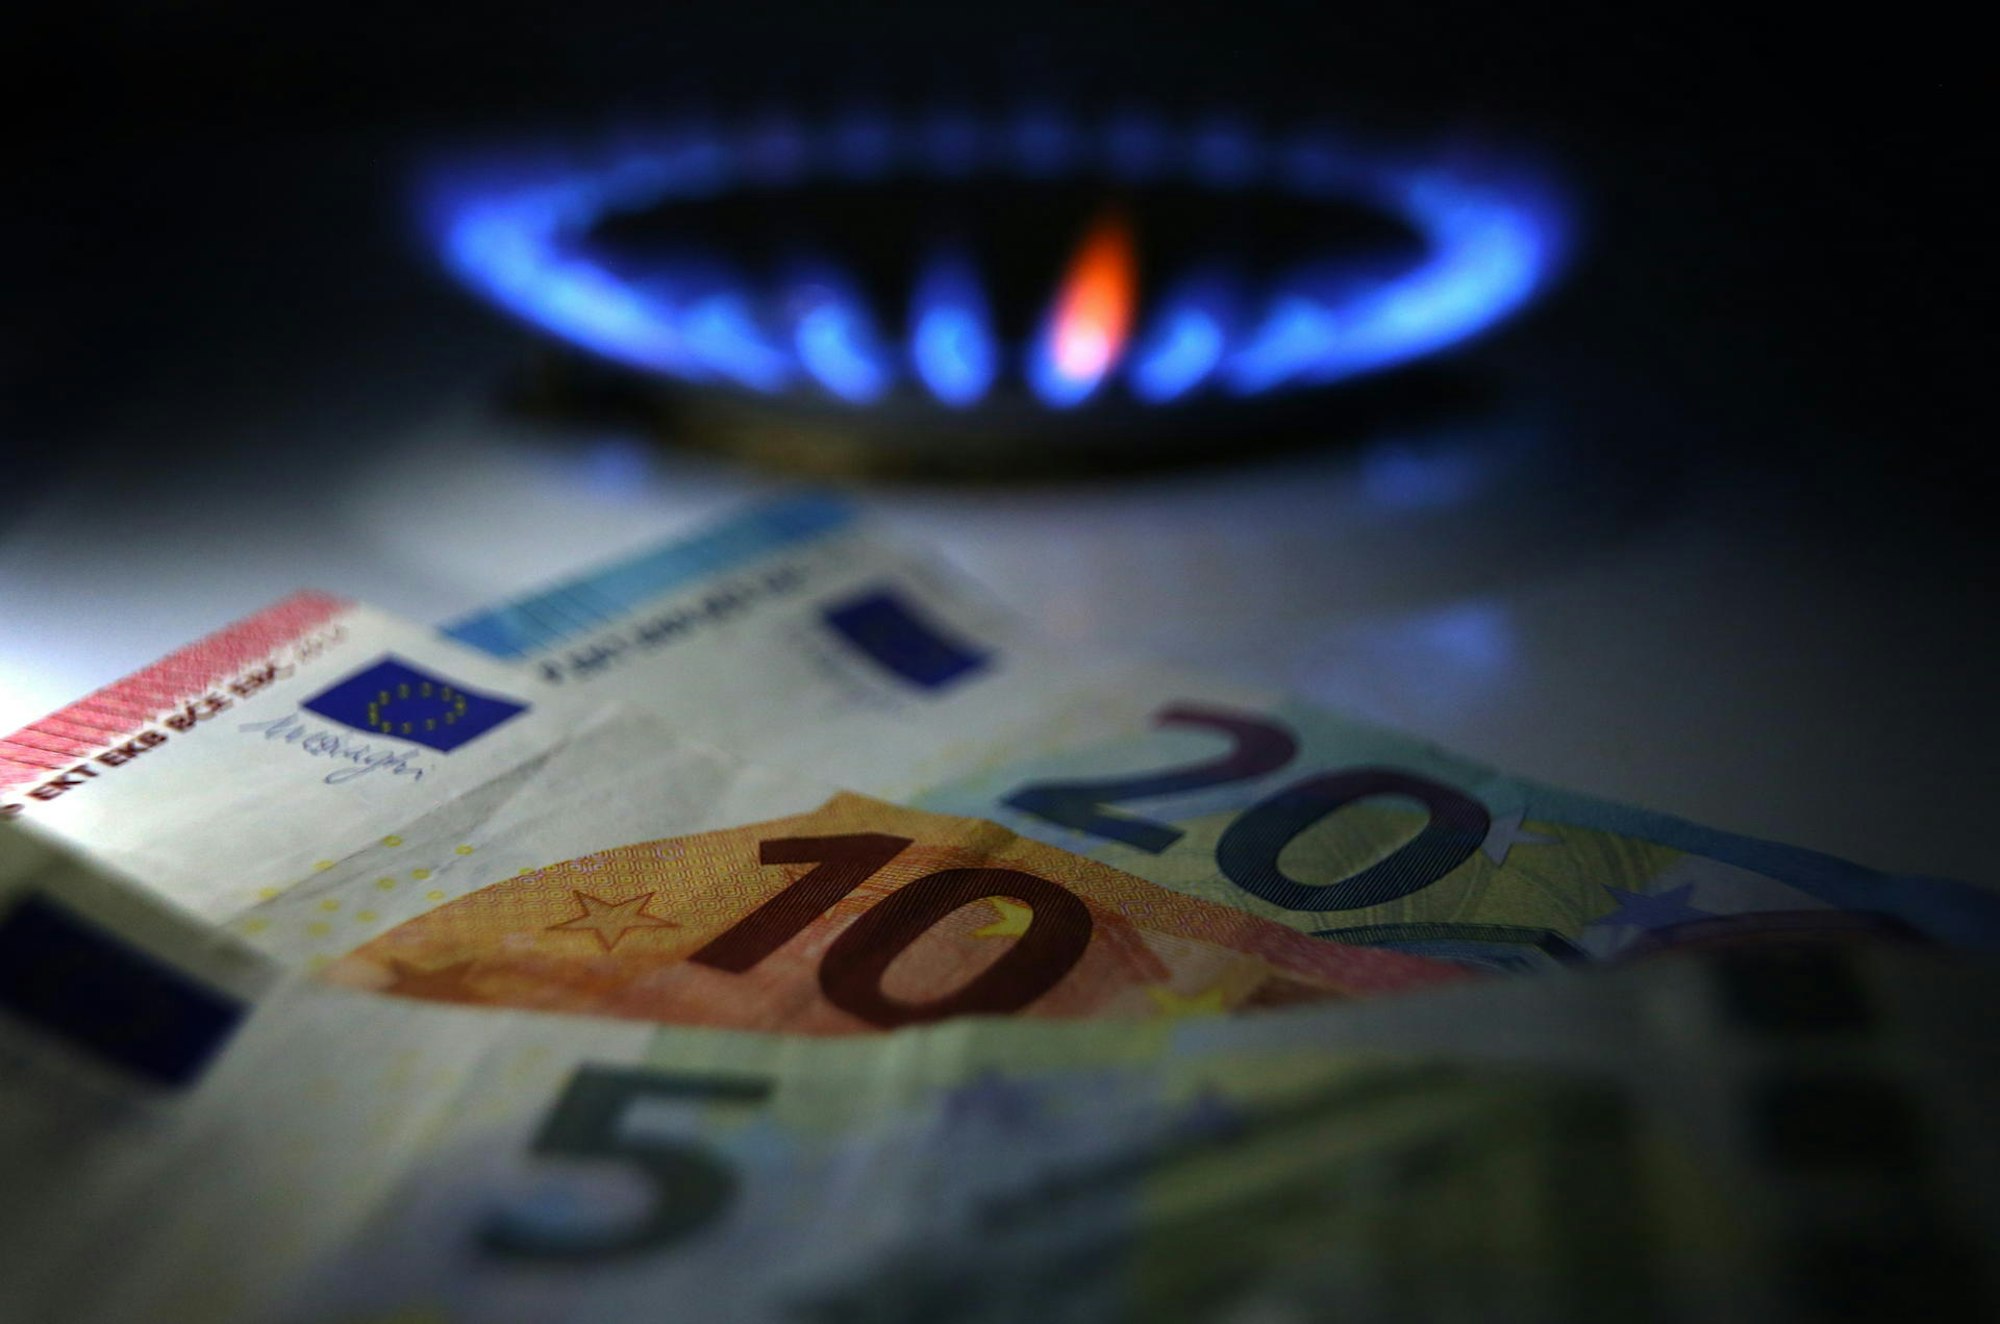 Insbesondere die Preise für Gas steigen immer weiter – die Rösrather Stadtwerke reagieren mit einer Kundenauswahl.